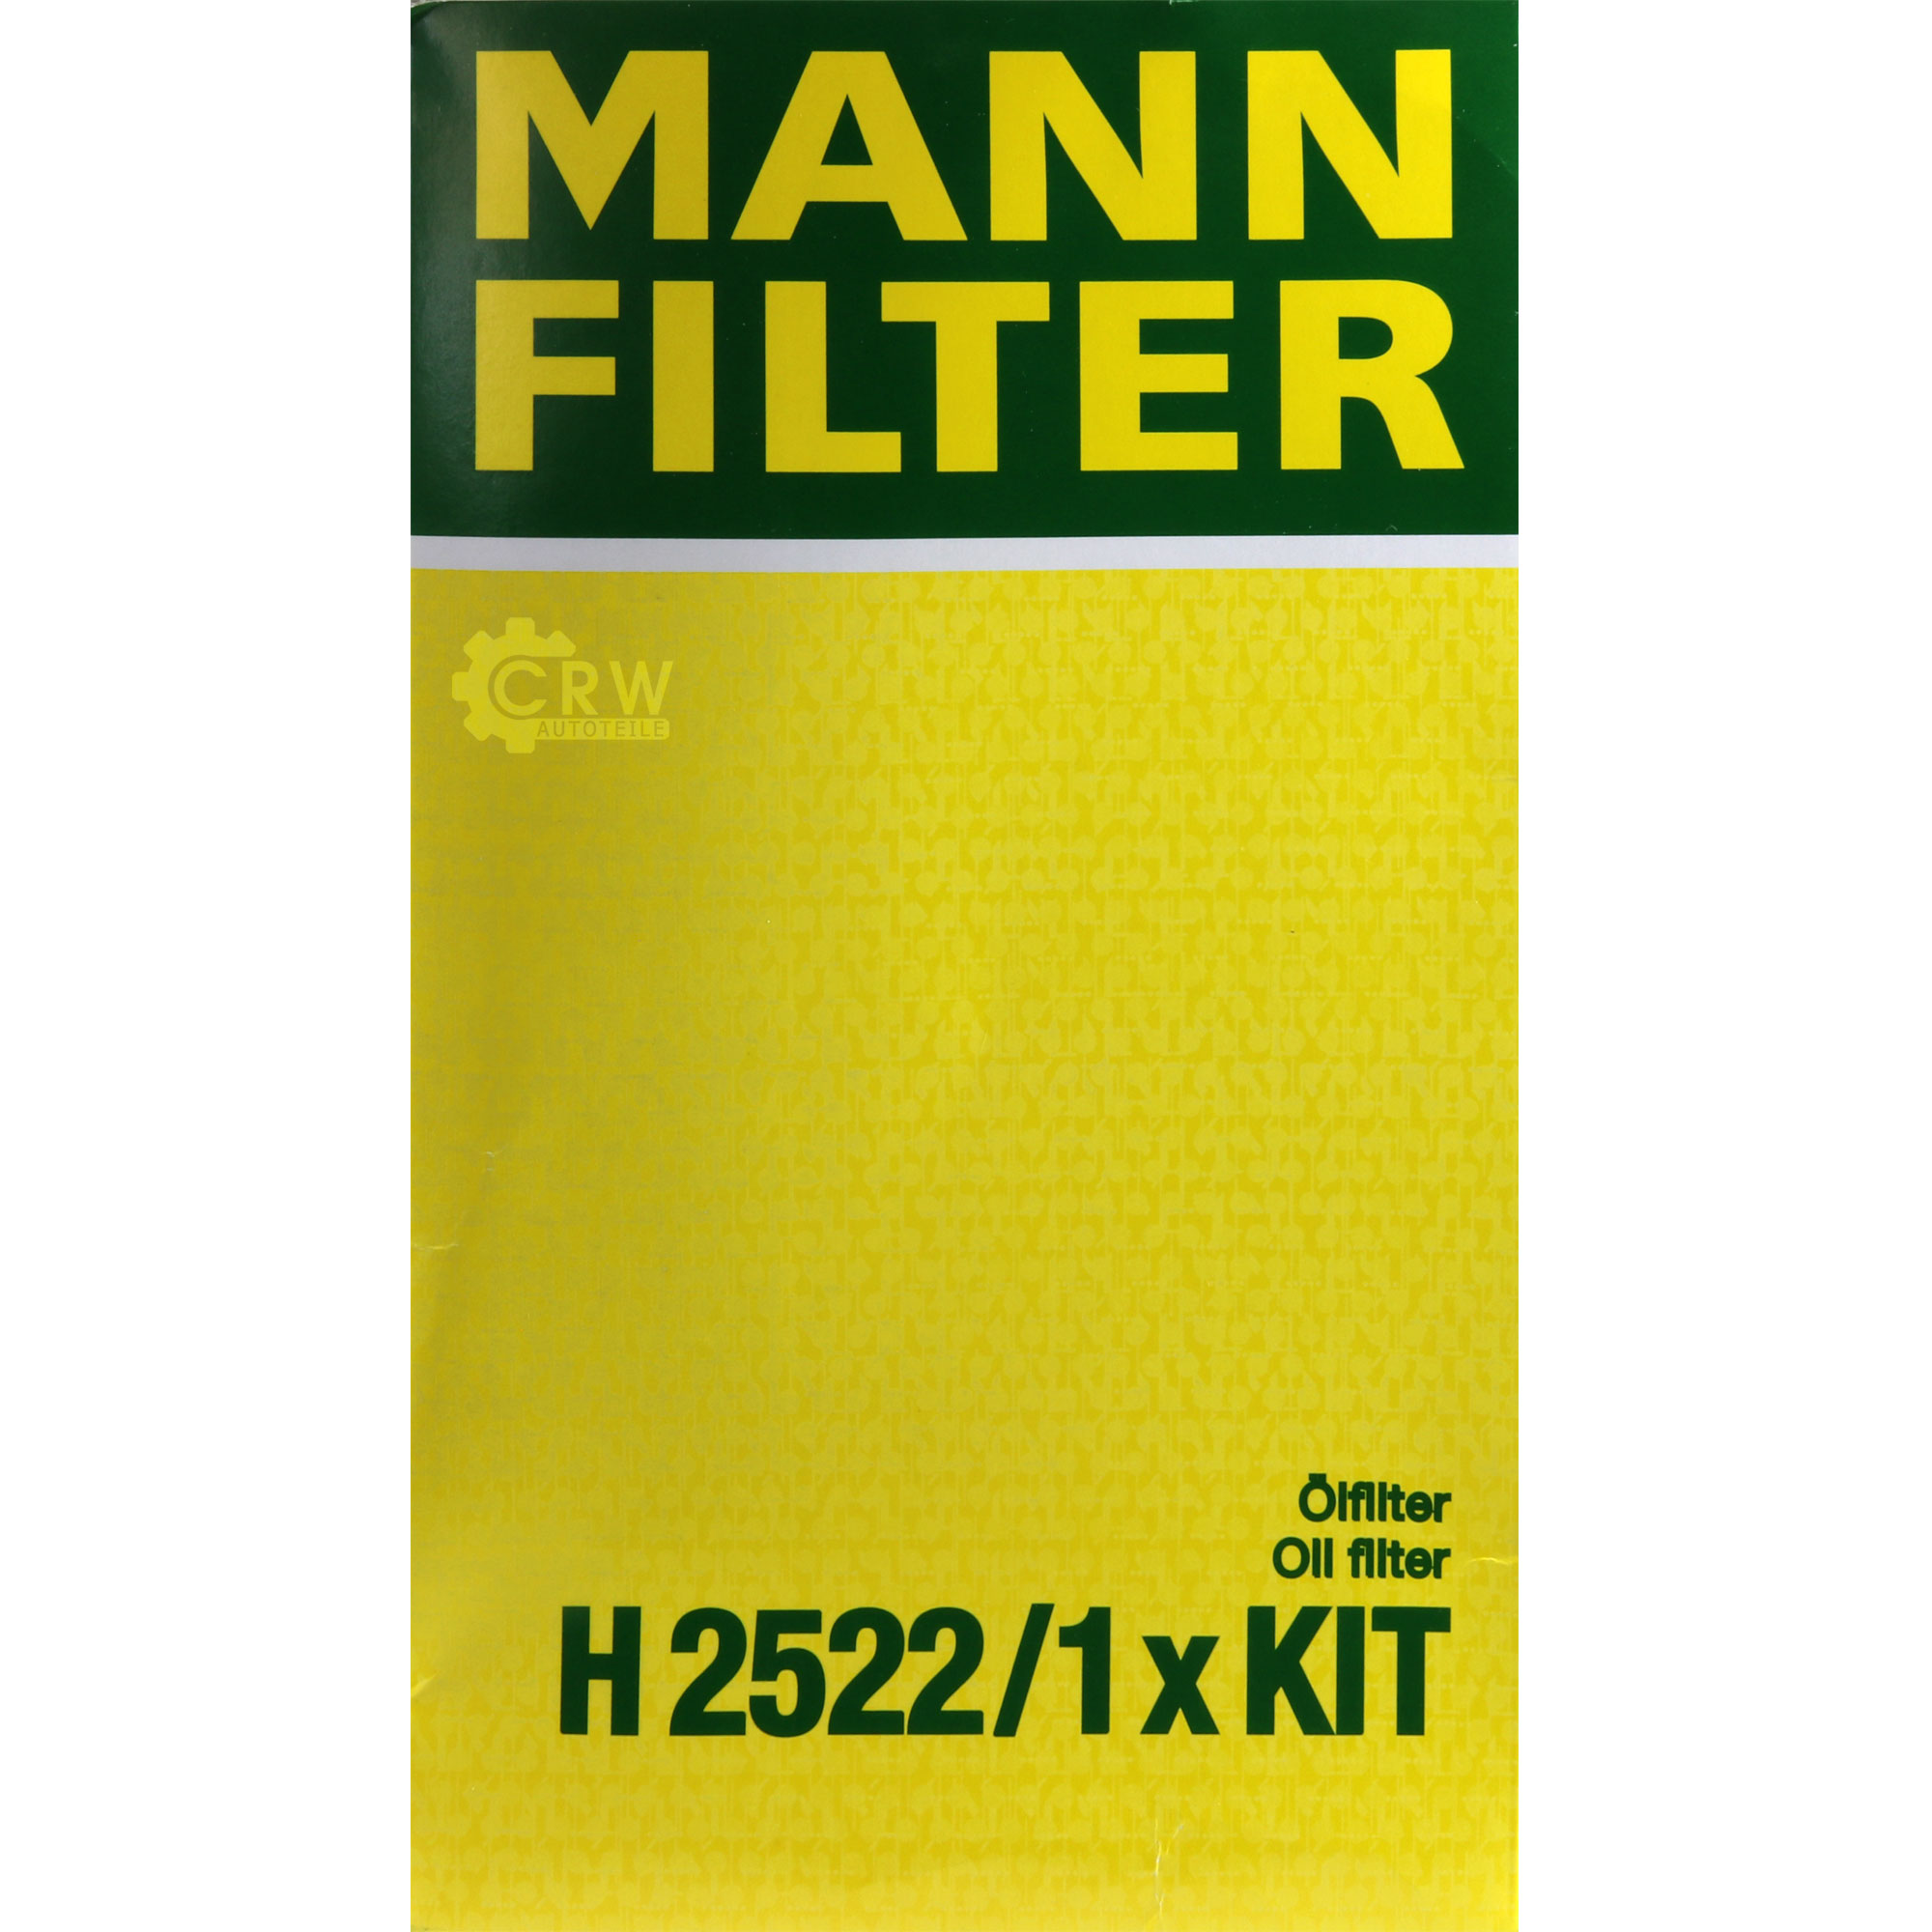 MANN-FILTER Getriebeölfilter für Automatikgetriebe H 2522/1 x KIT